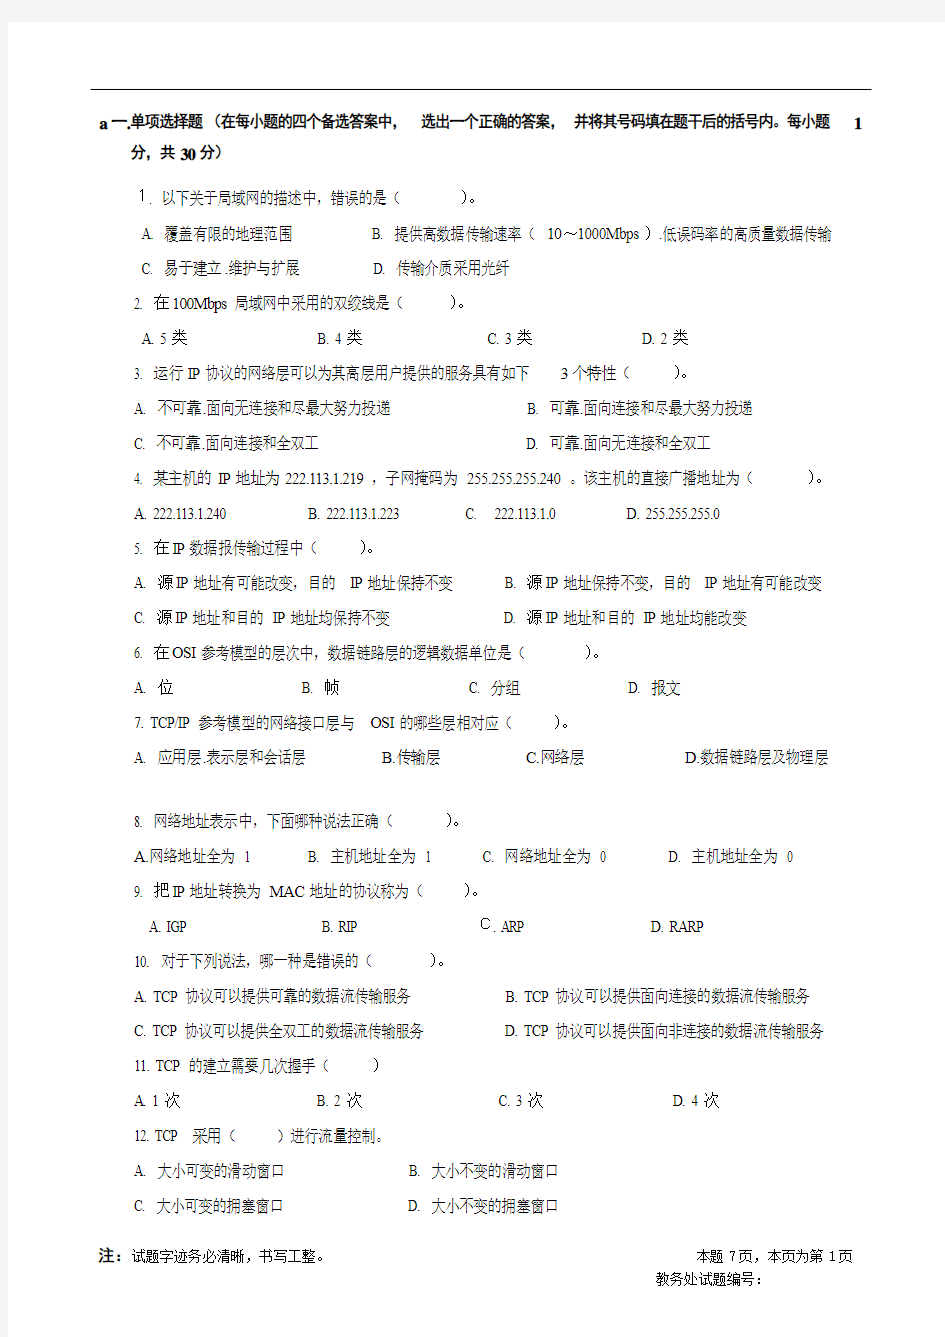 四川大学2006年计算机网络考试试题-吕光宏